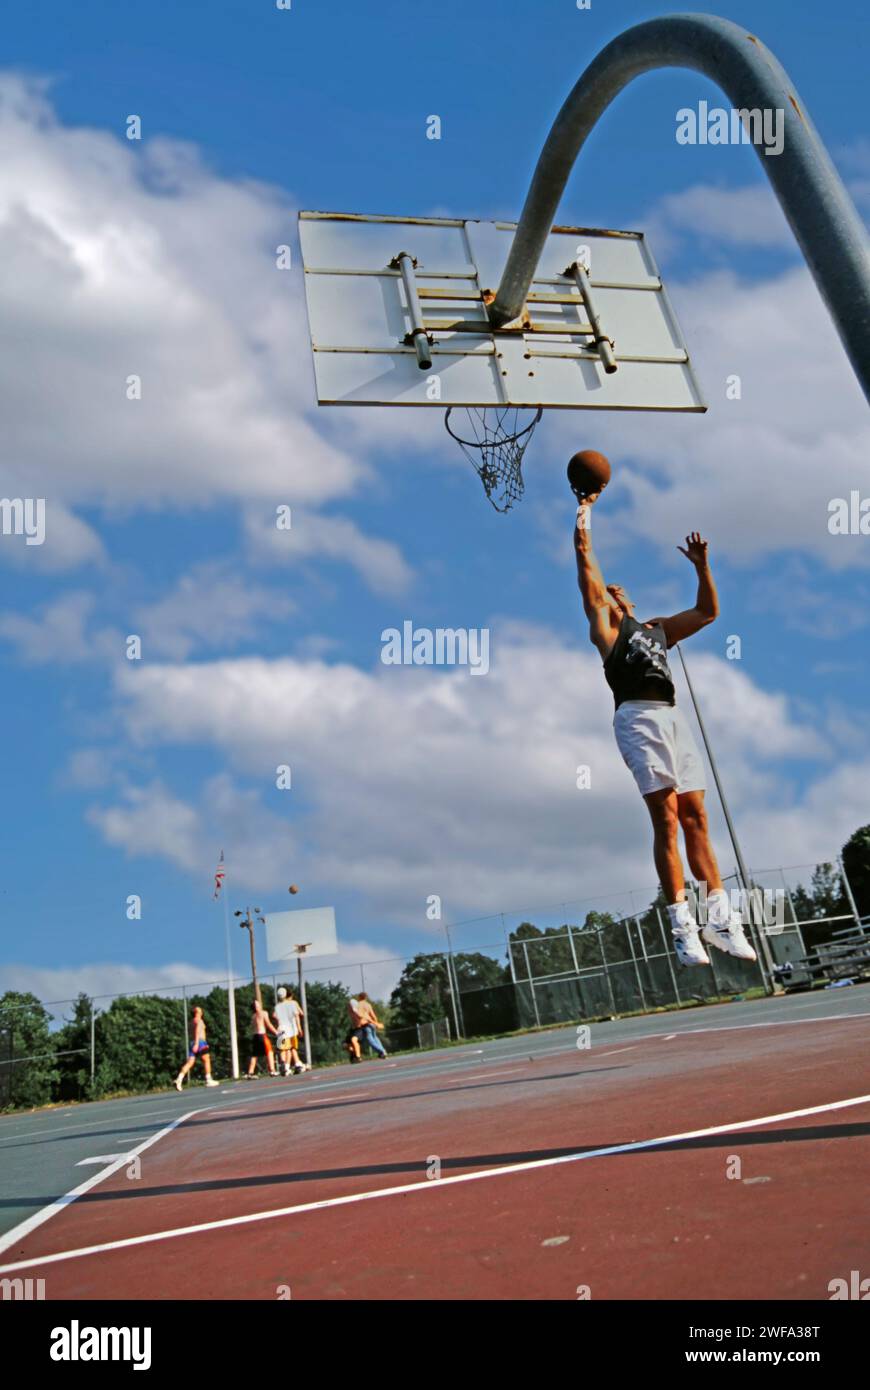 Ein Mann, der Basketballkleidung trägt, springt hoch, während er den Basketball hält, um ihn in den Korb zu tauchen. Stockfoto